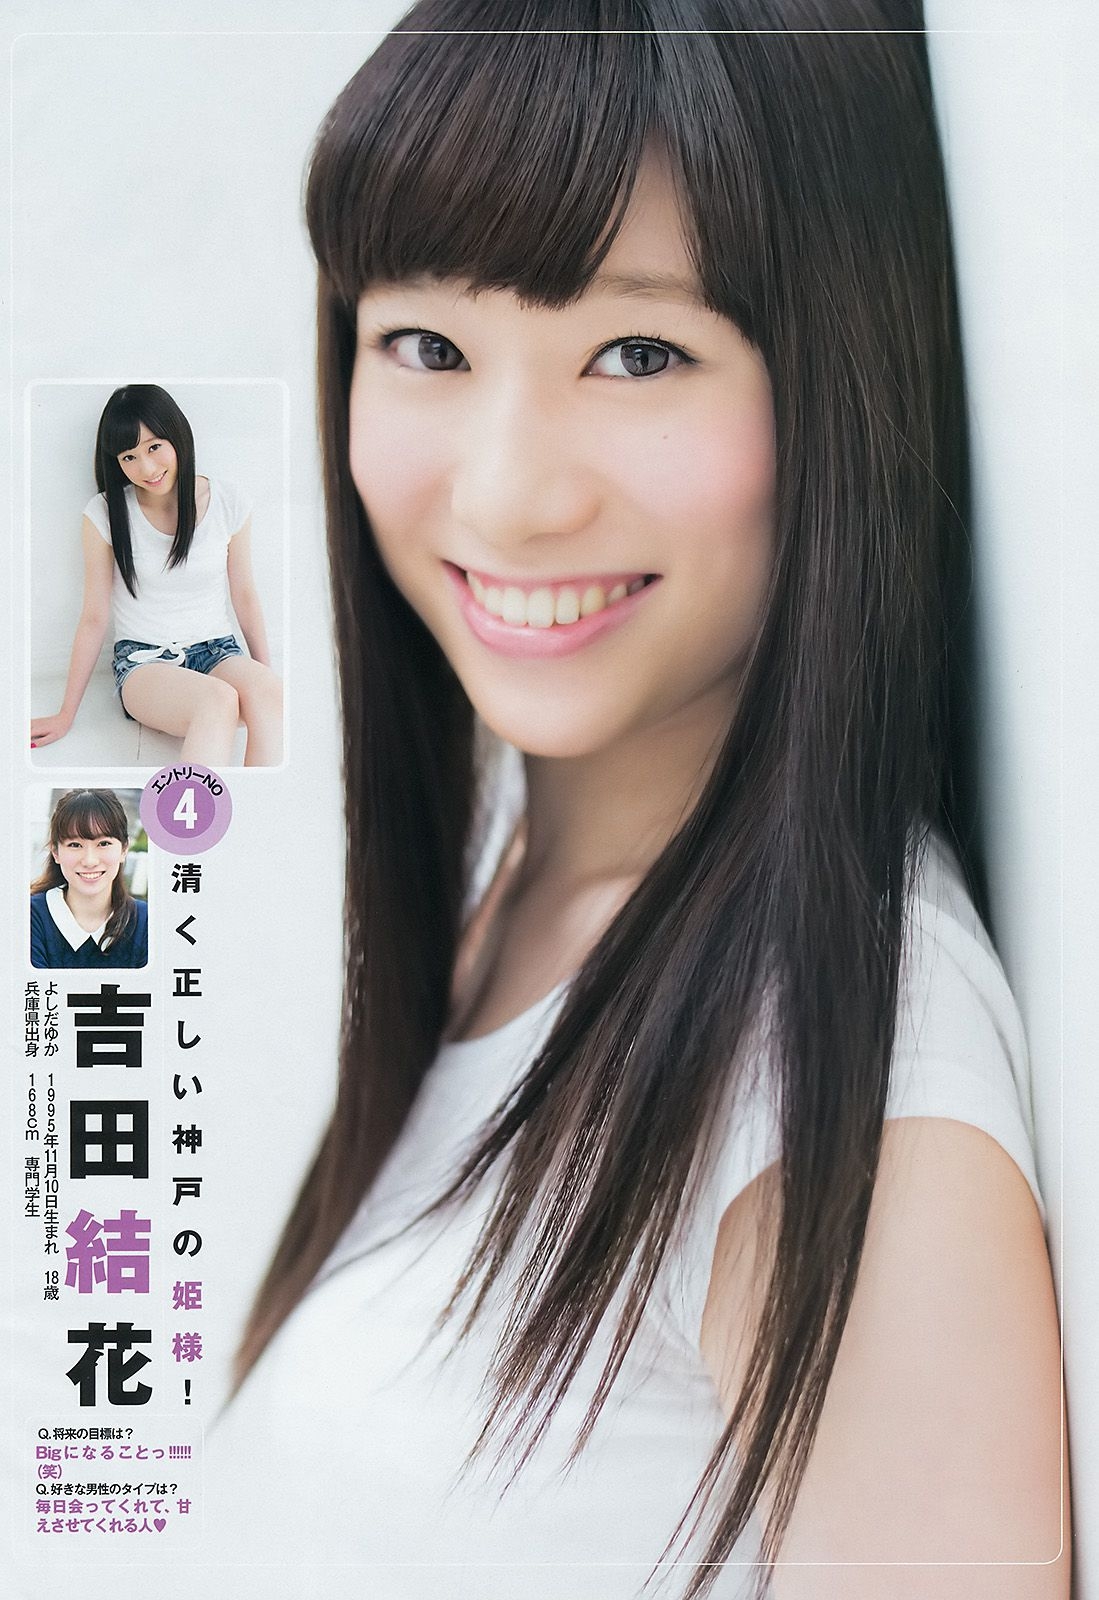 ギャルコン2014 制コレ アルティメット2014 大阪DAIZY7 [Weekly Young Jump] 2014年No.42 写真杂志 